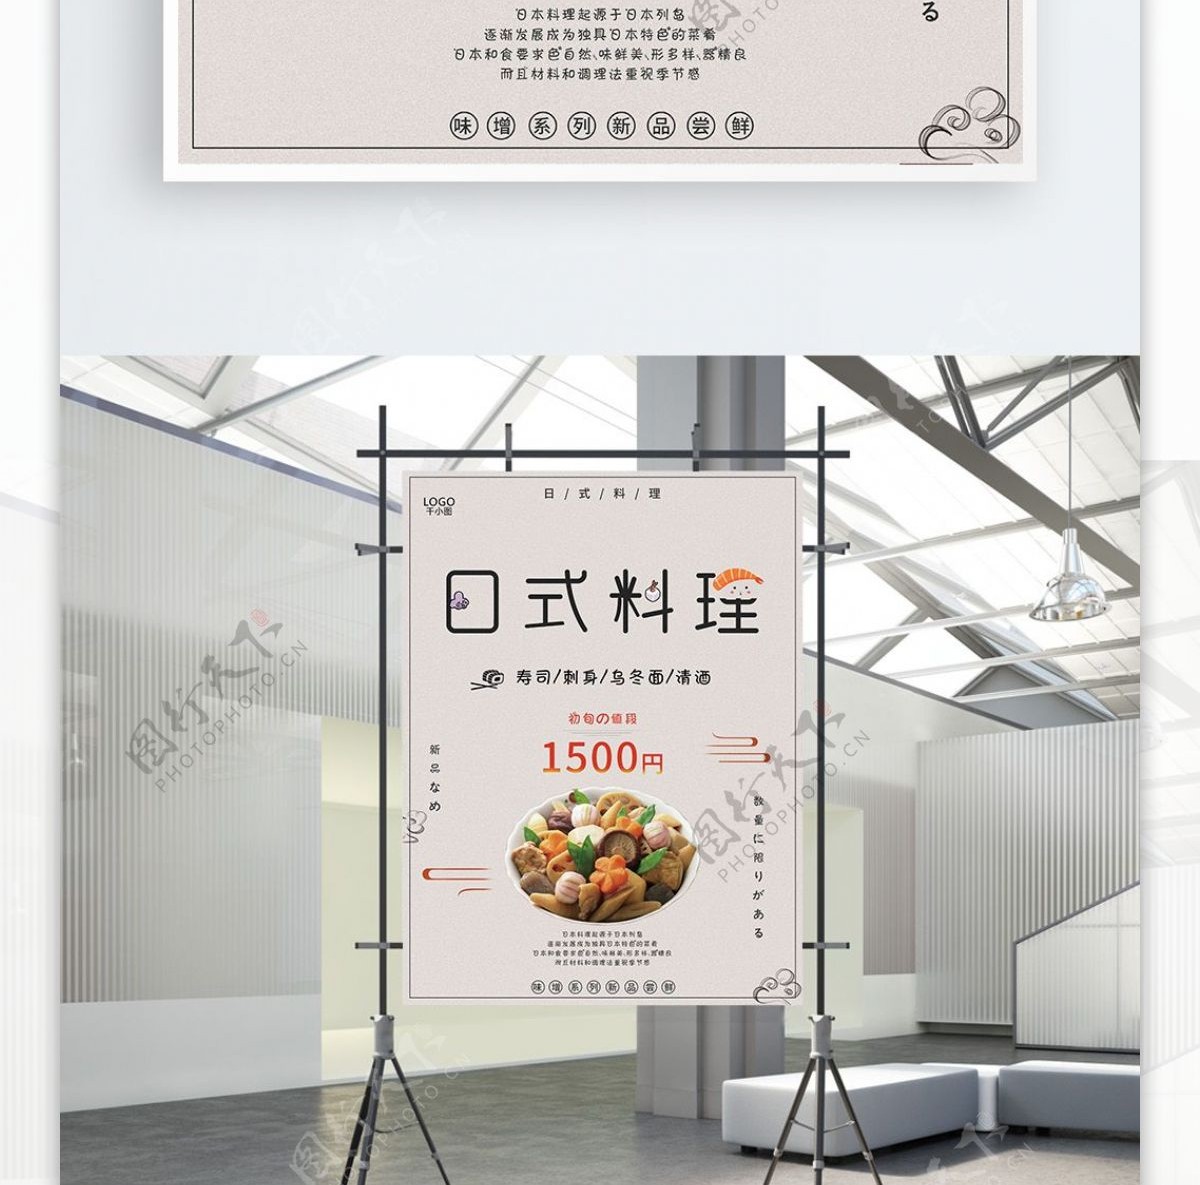 清新简约日式料理新品菜单美食海报psd